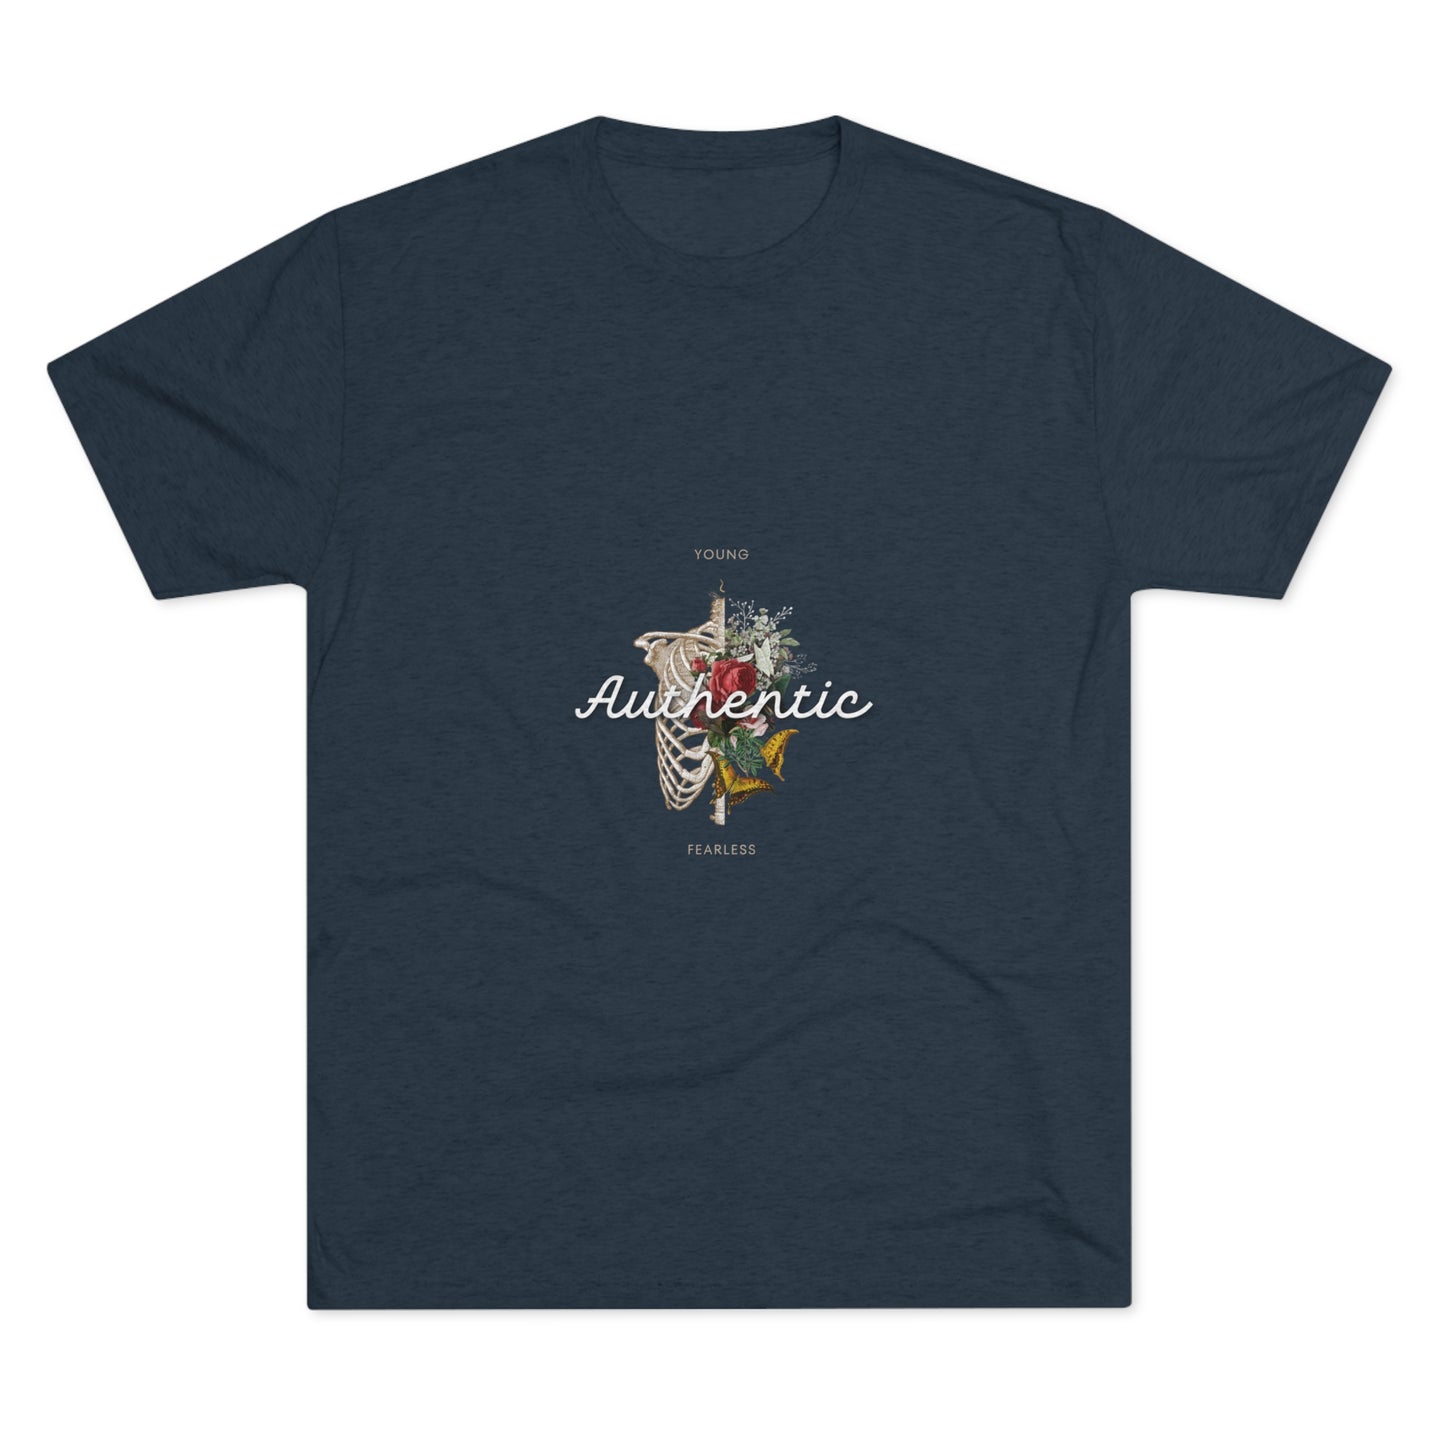 "Authentic" tri Blend T-shirt